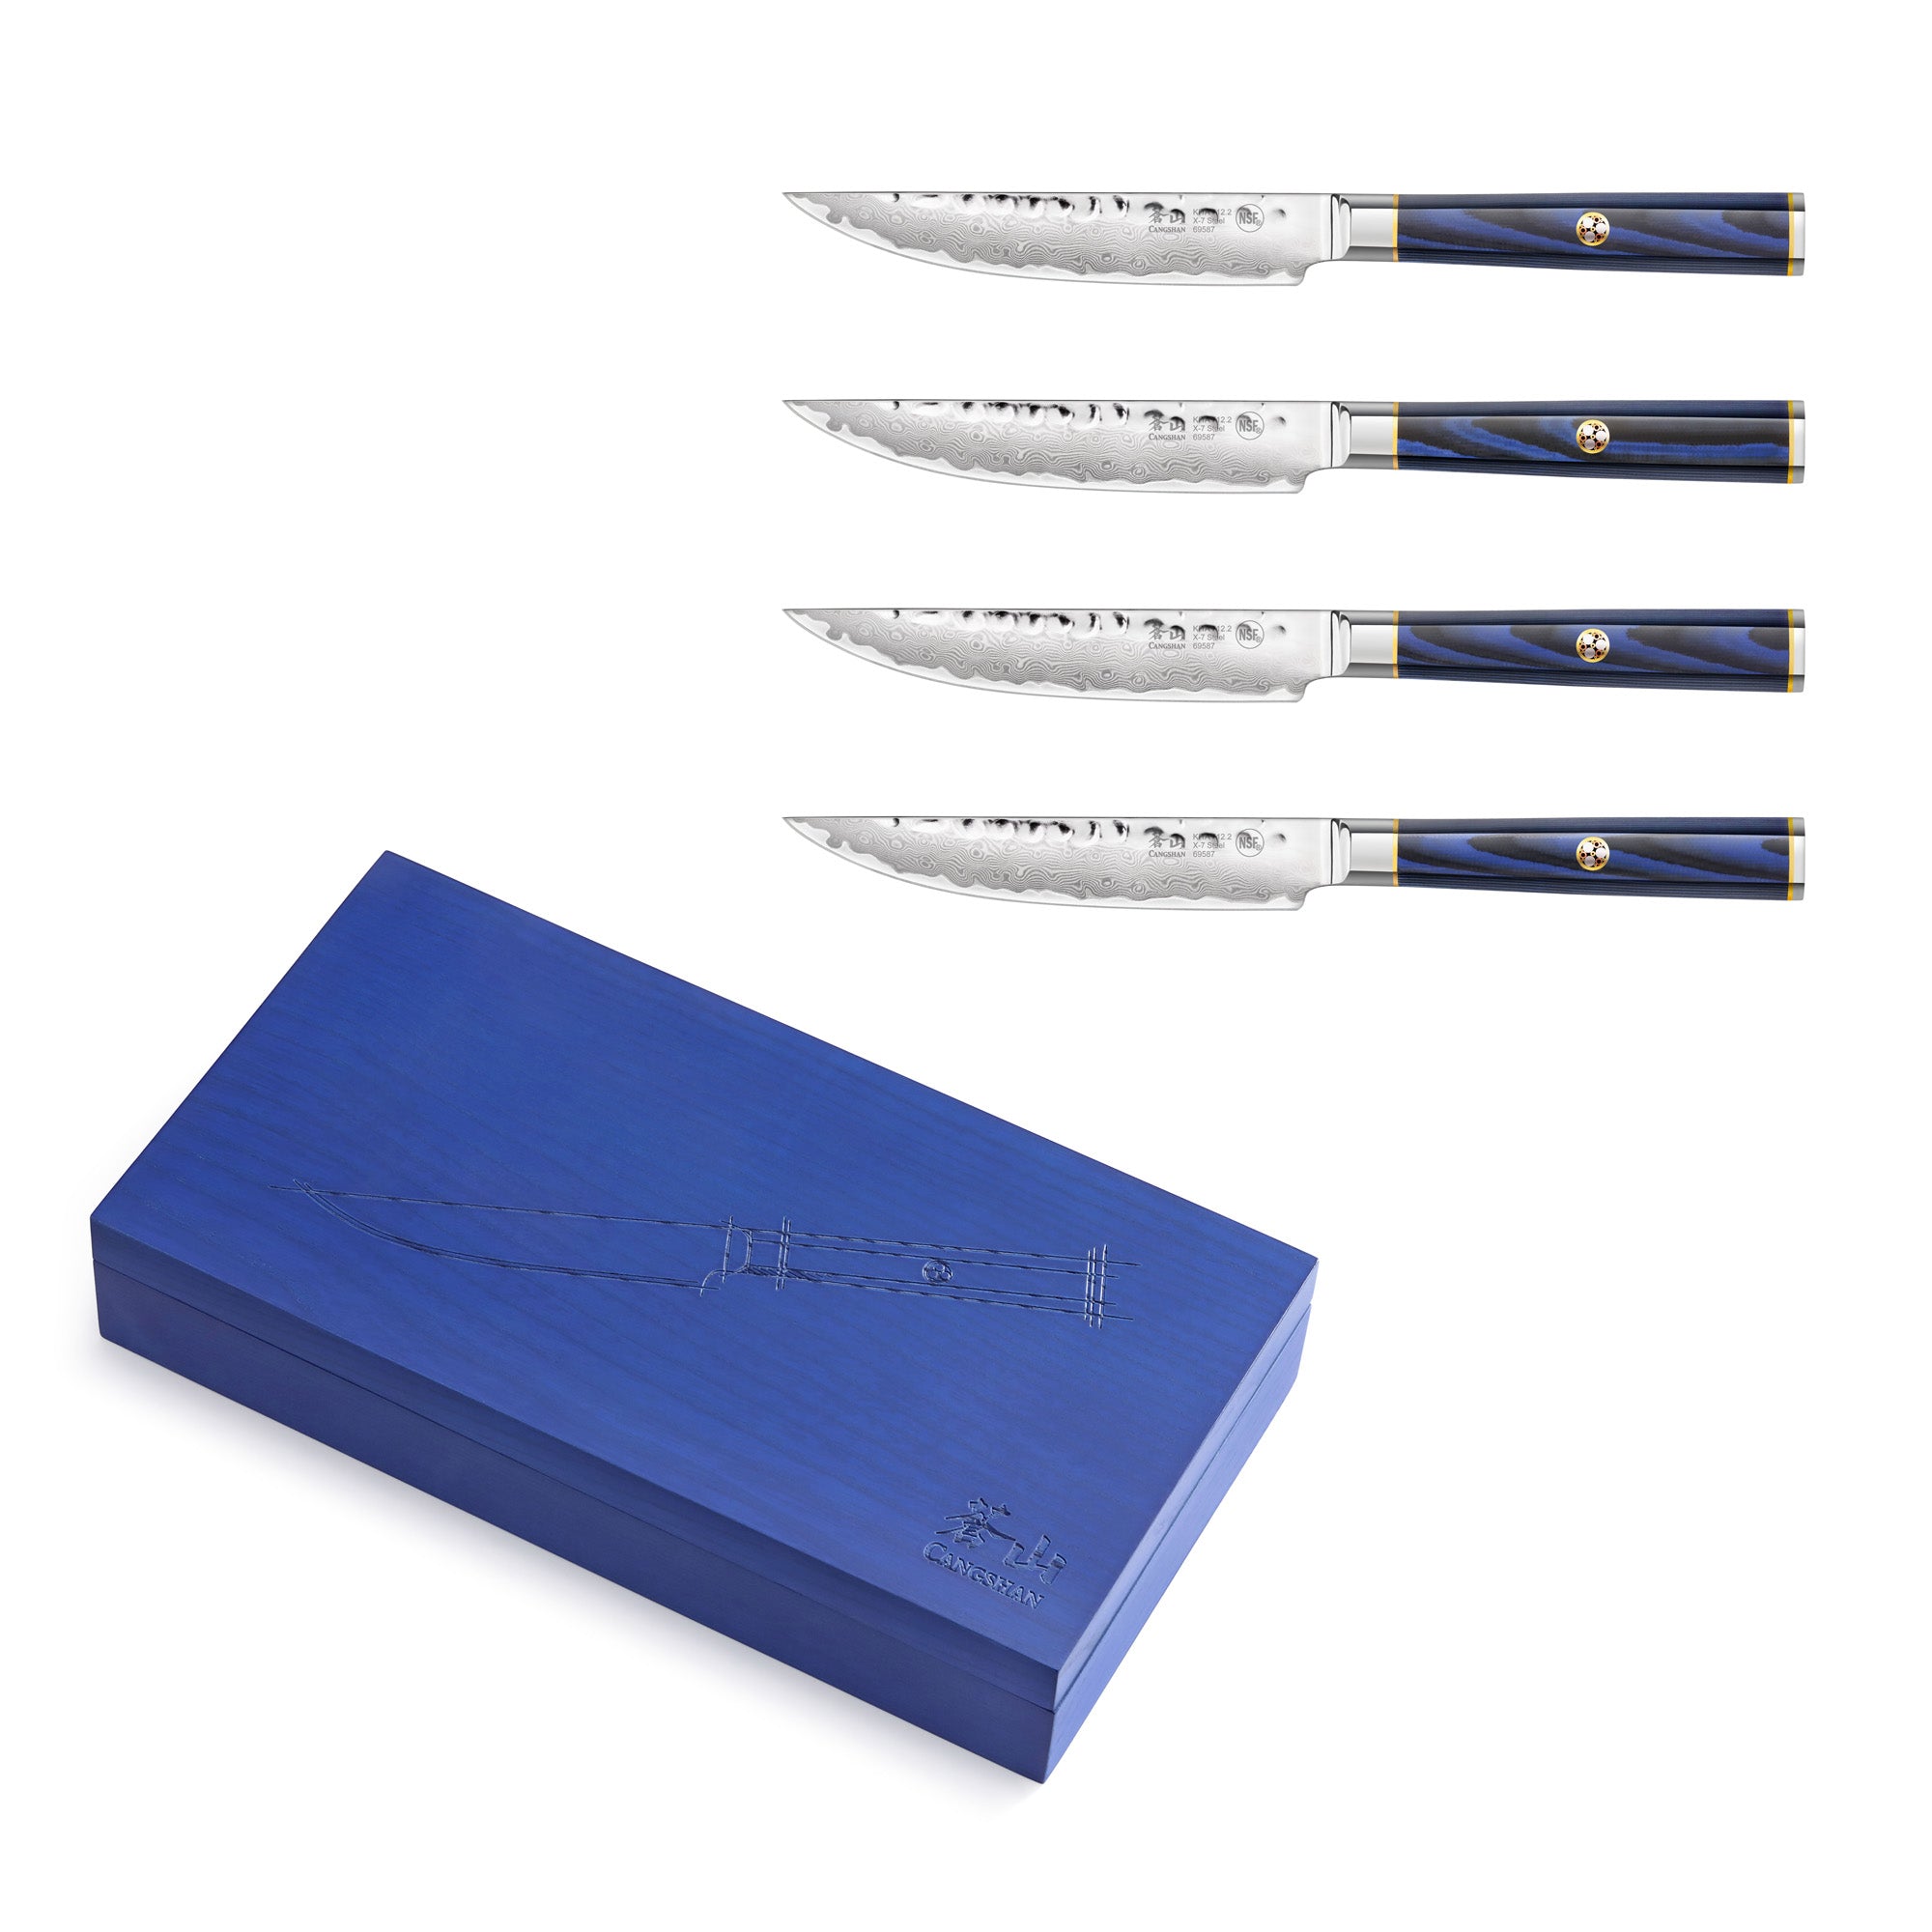 Cangshan KITA 4-piece Steak Knife Set, Ash Box